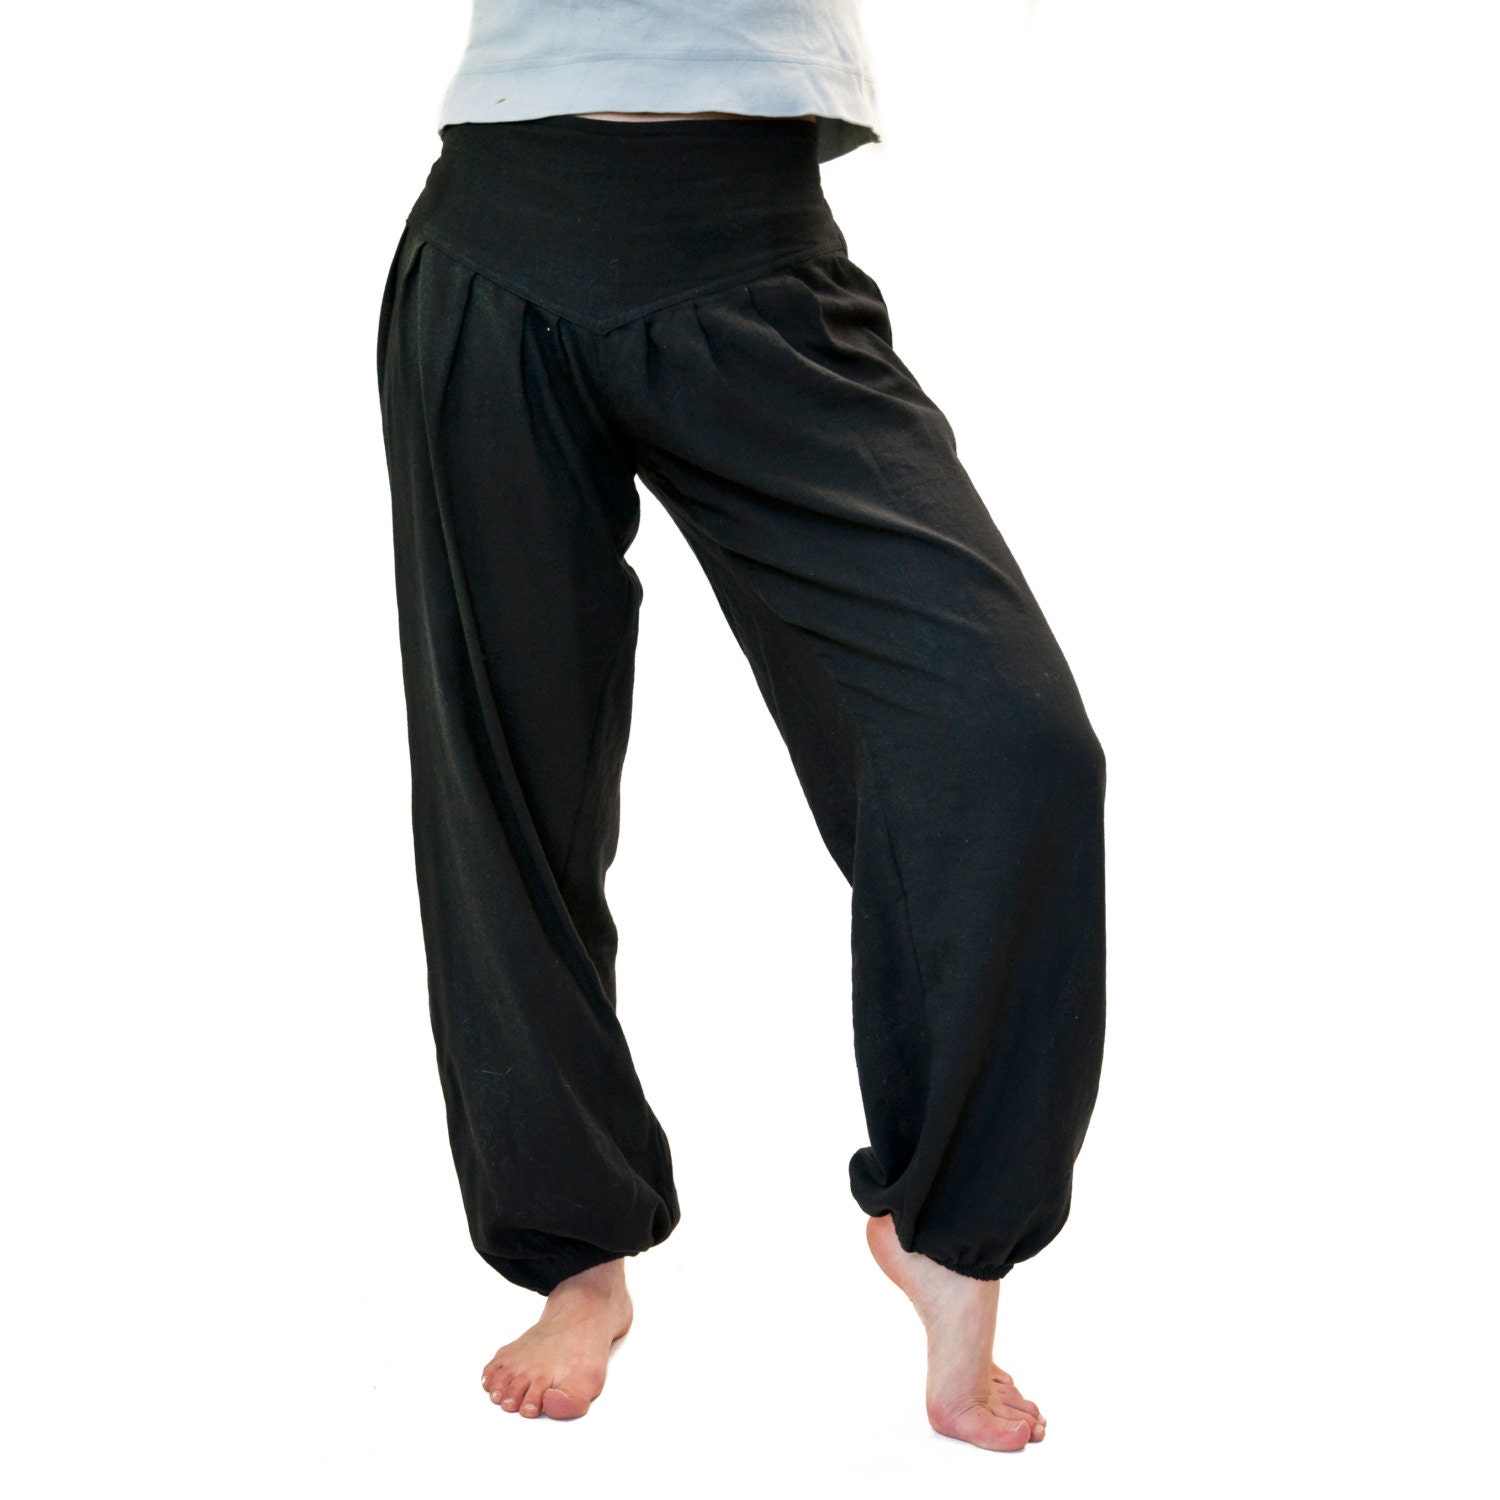 Pants S M L XL Cotton Black Pluder Pants Women | Etsy